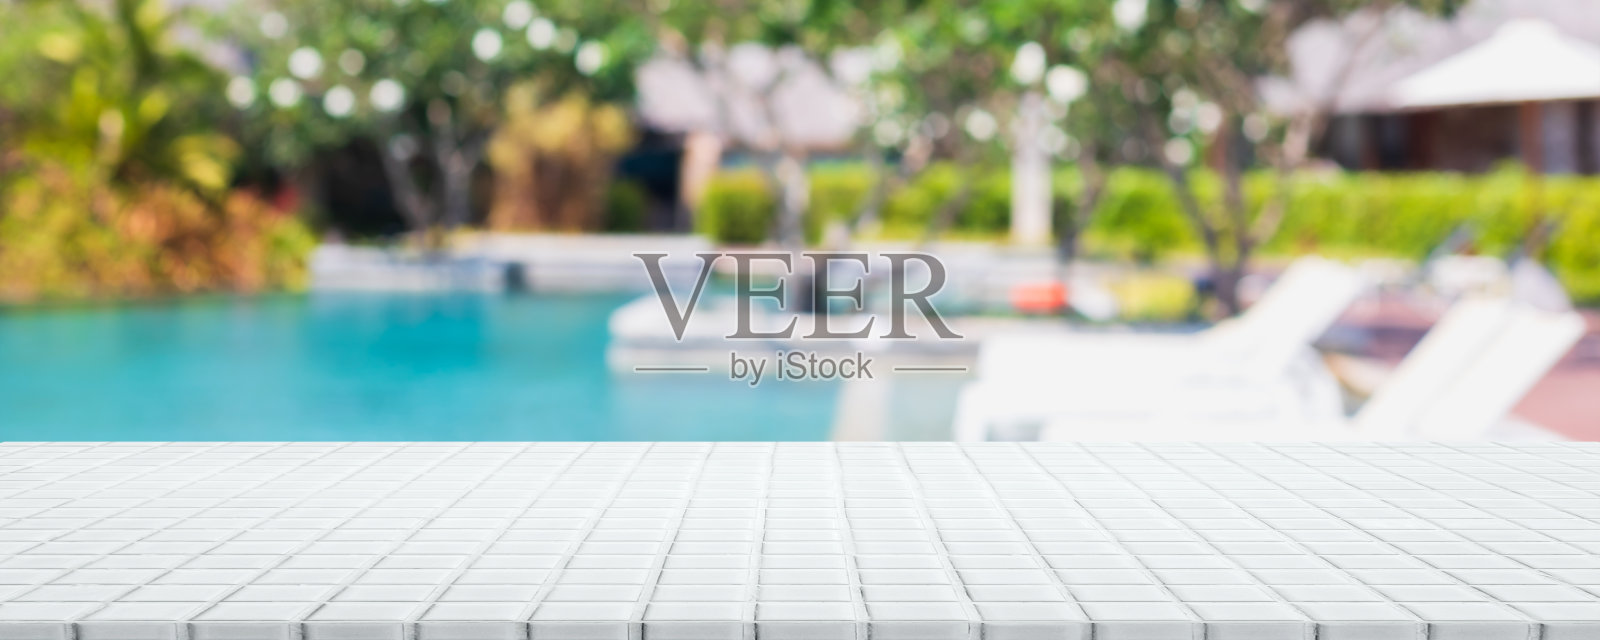 空白色陶瓷马赛克桌面和模糊的游泳池在热带度假夏季横幅背景-可以用来展示或蒙太奇您的产品。照片摄影图片